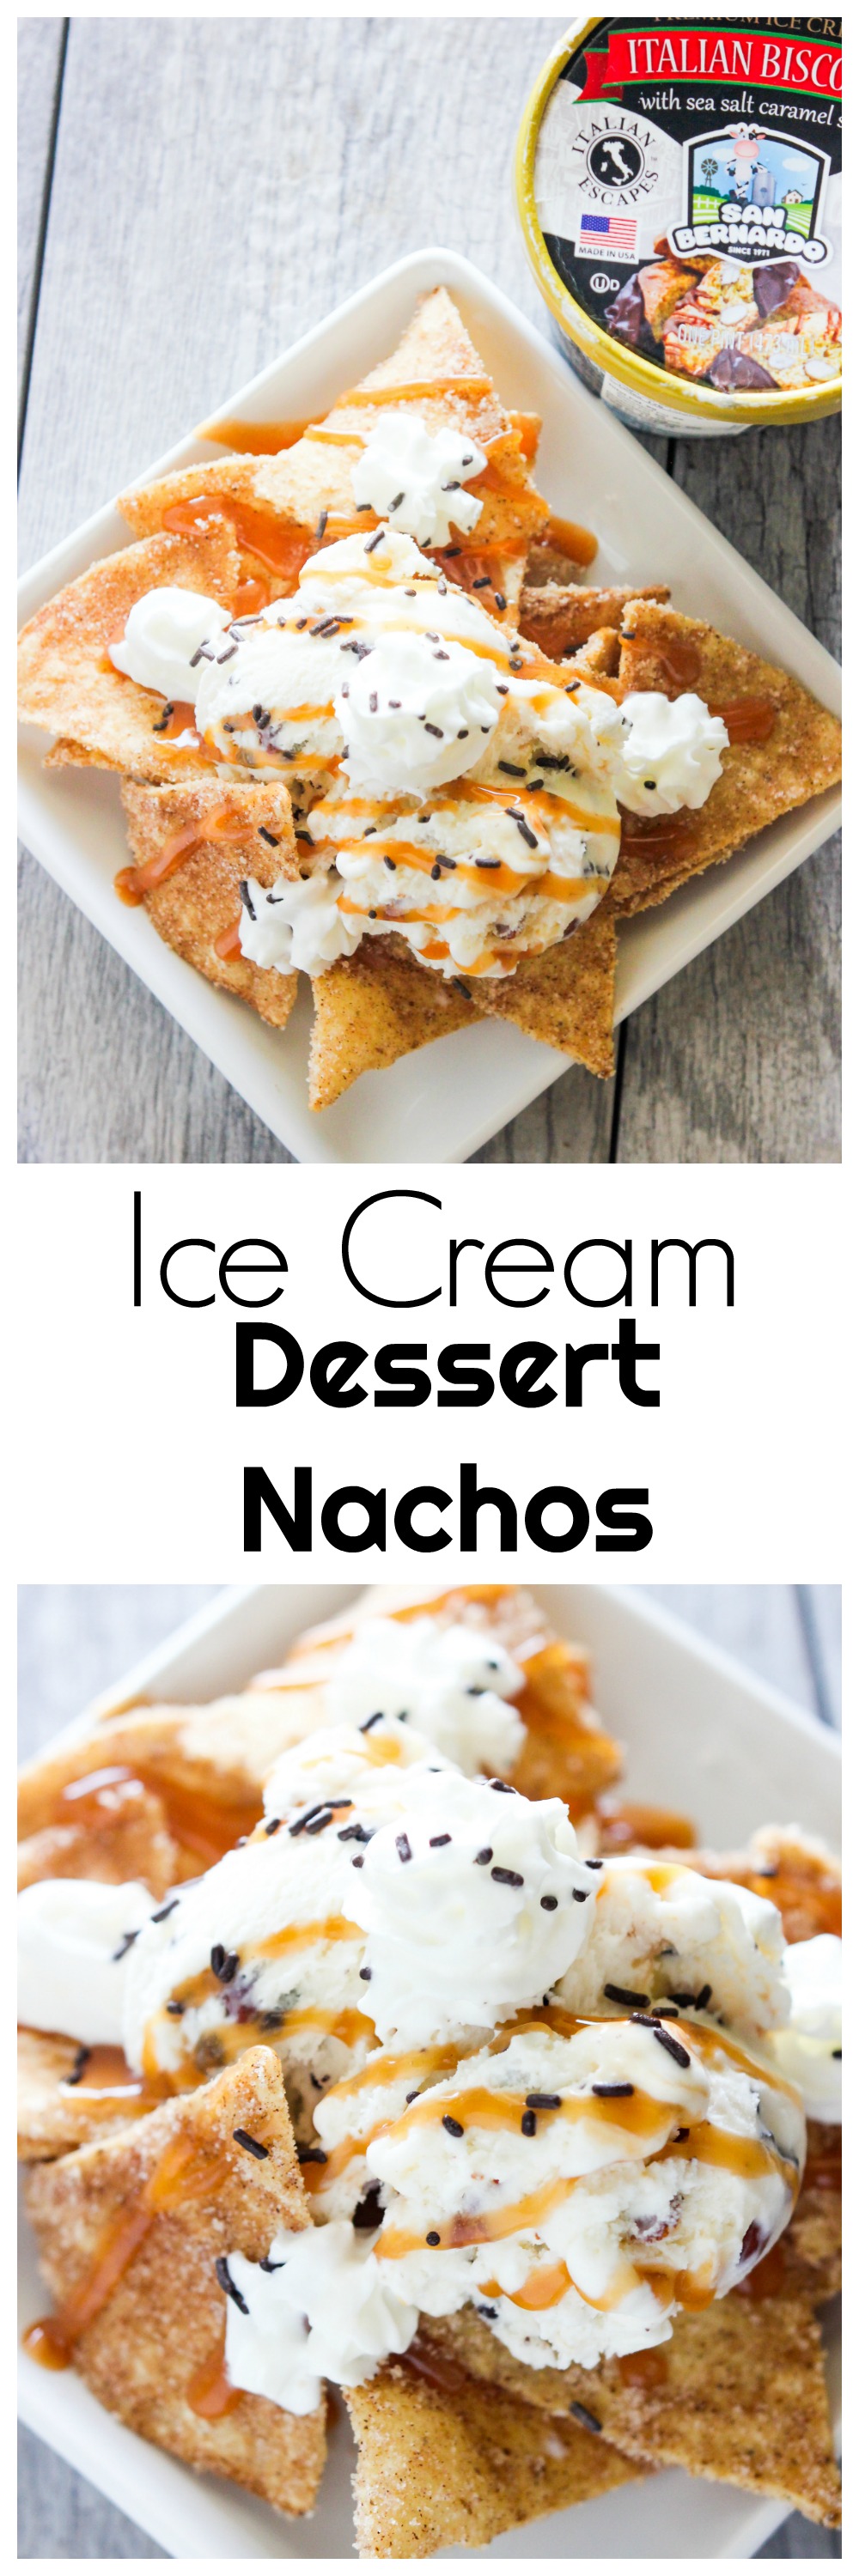 Ice Cream Dessert Nachos